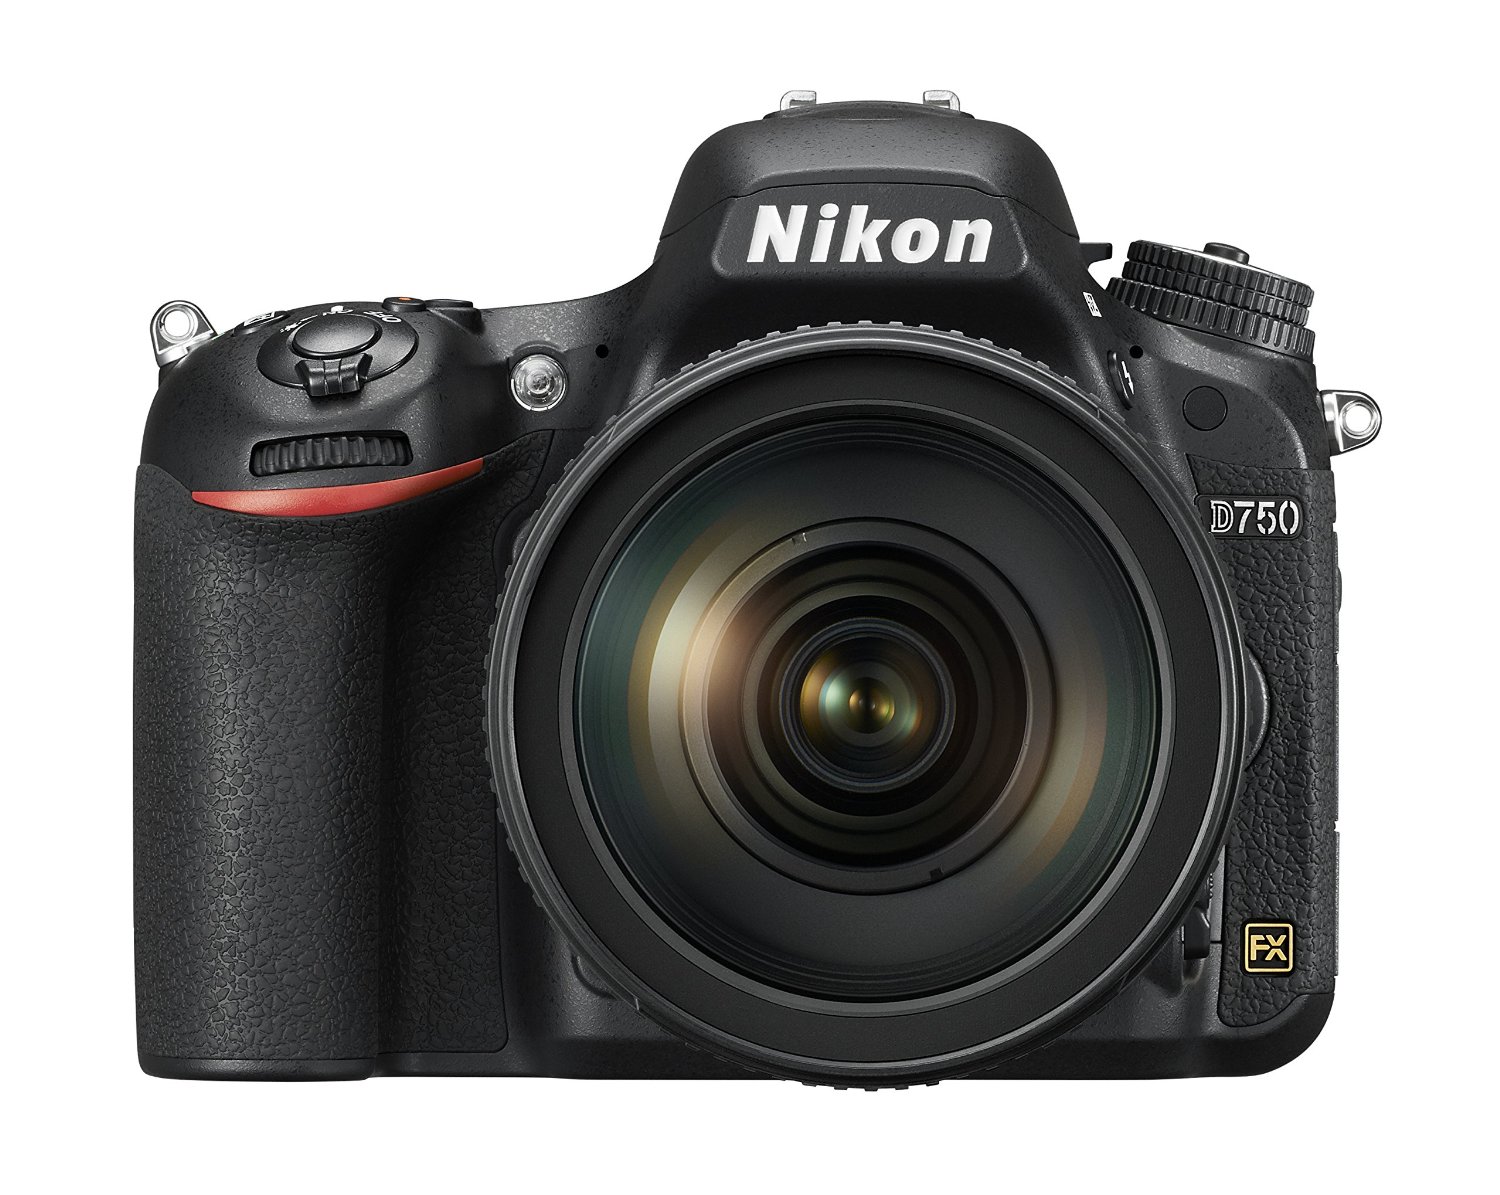 Nikon Câmera digital SLR de formato D750 com lente NIKKOR com foco automático de 24-120 mm f / 4G ED VR